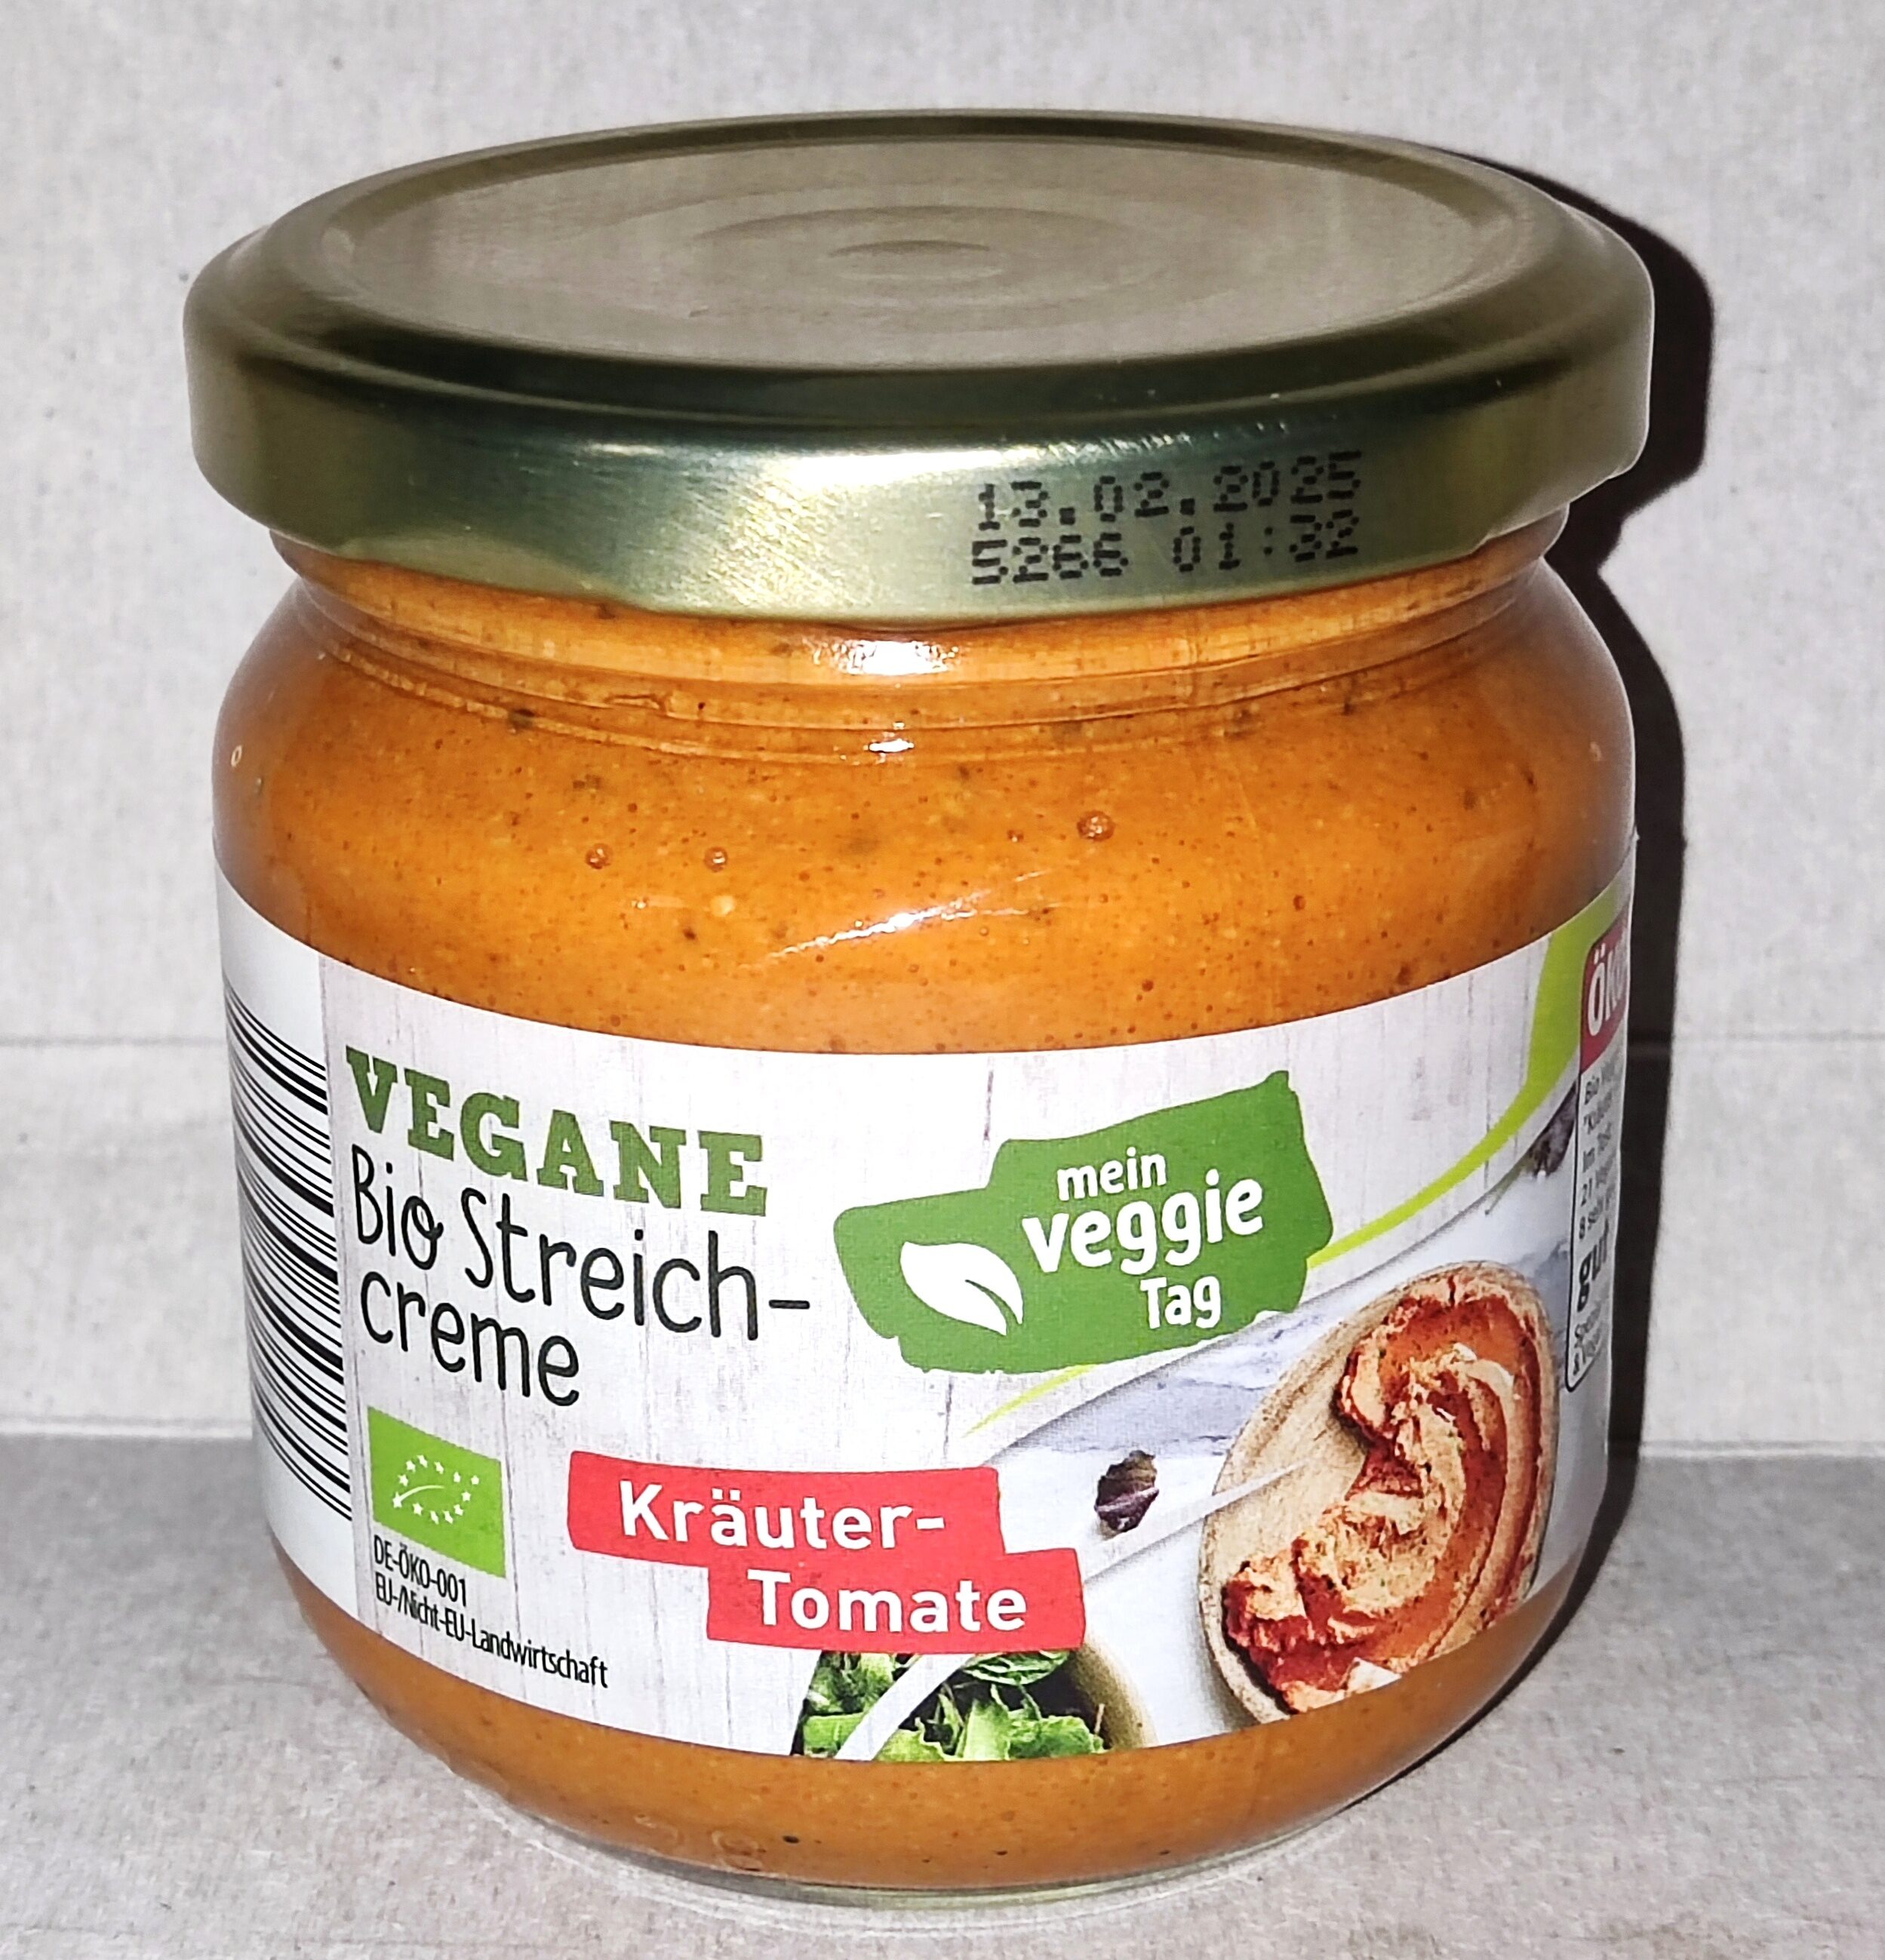 Vegane Bio-Streichcreme - Kräuter-Tomate - Produkt